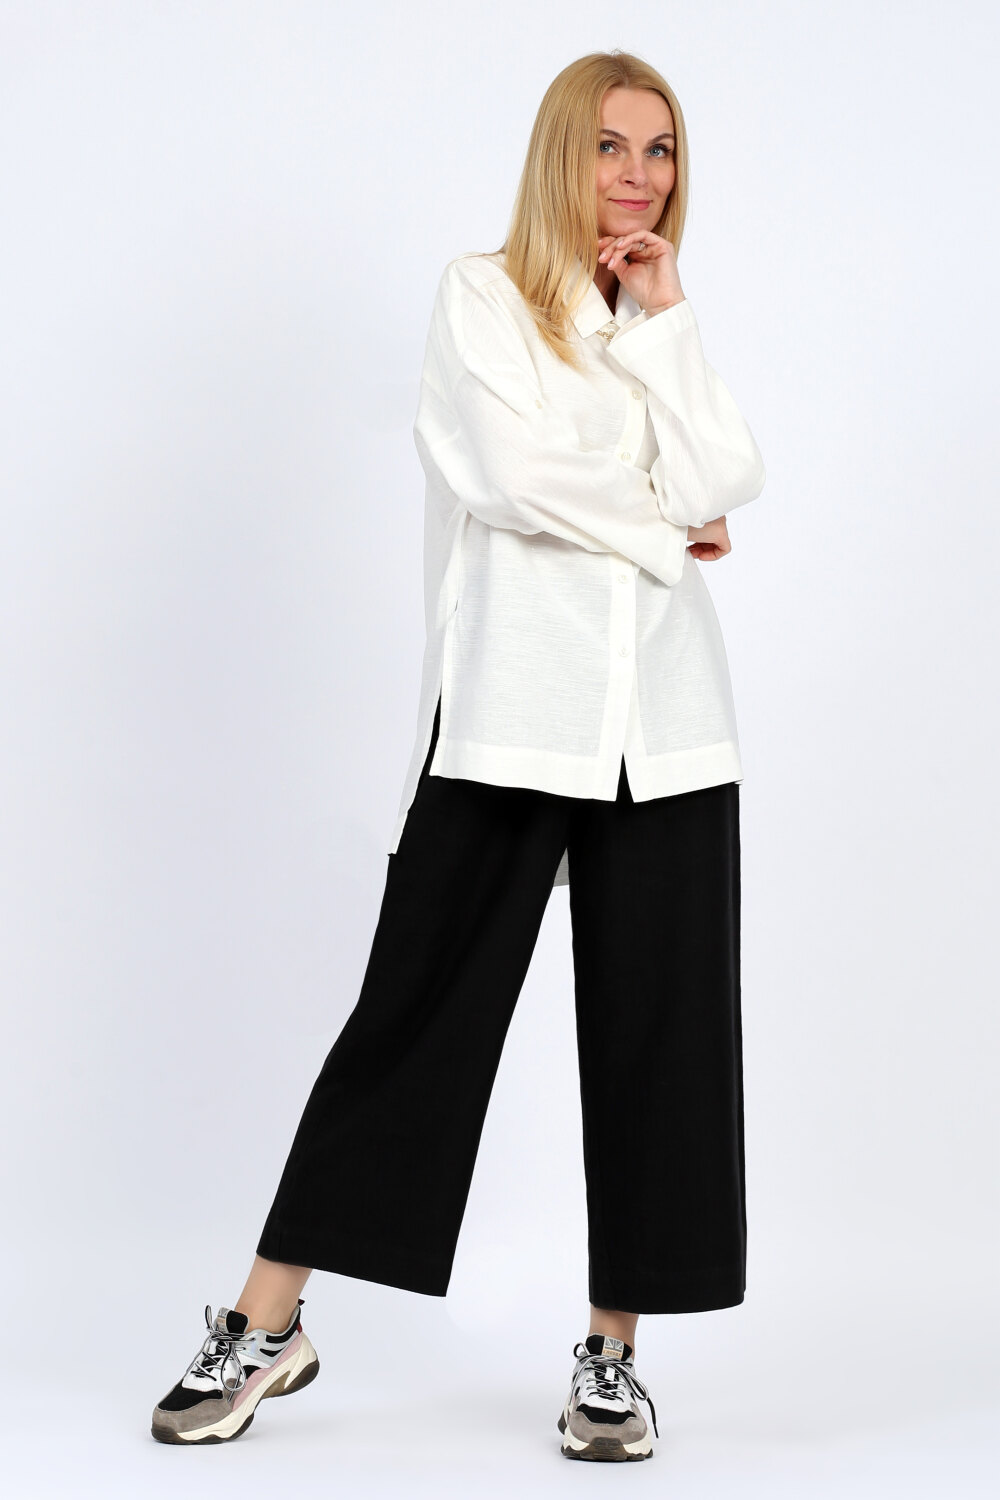 Блузка женская "Классика" модель 103/1 белая